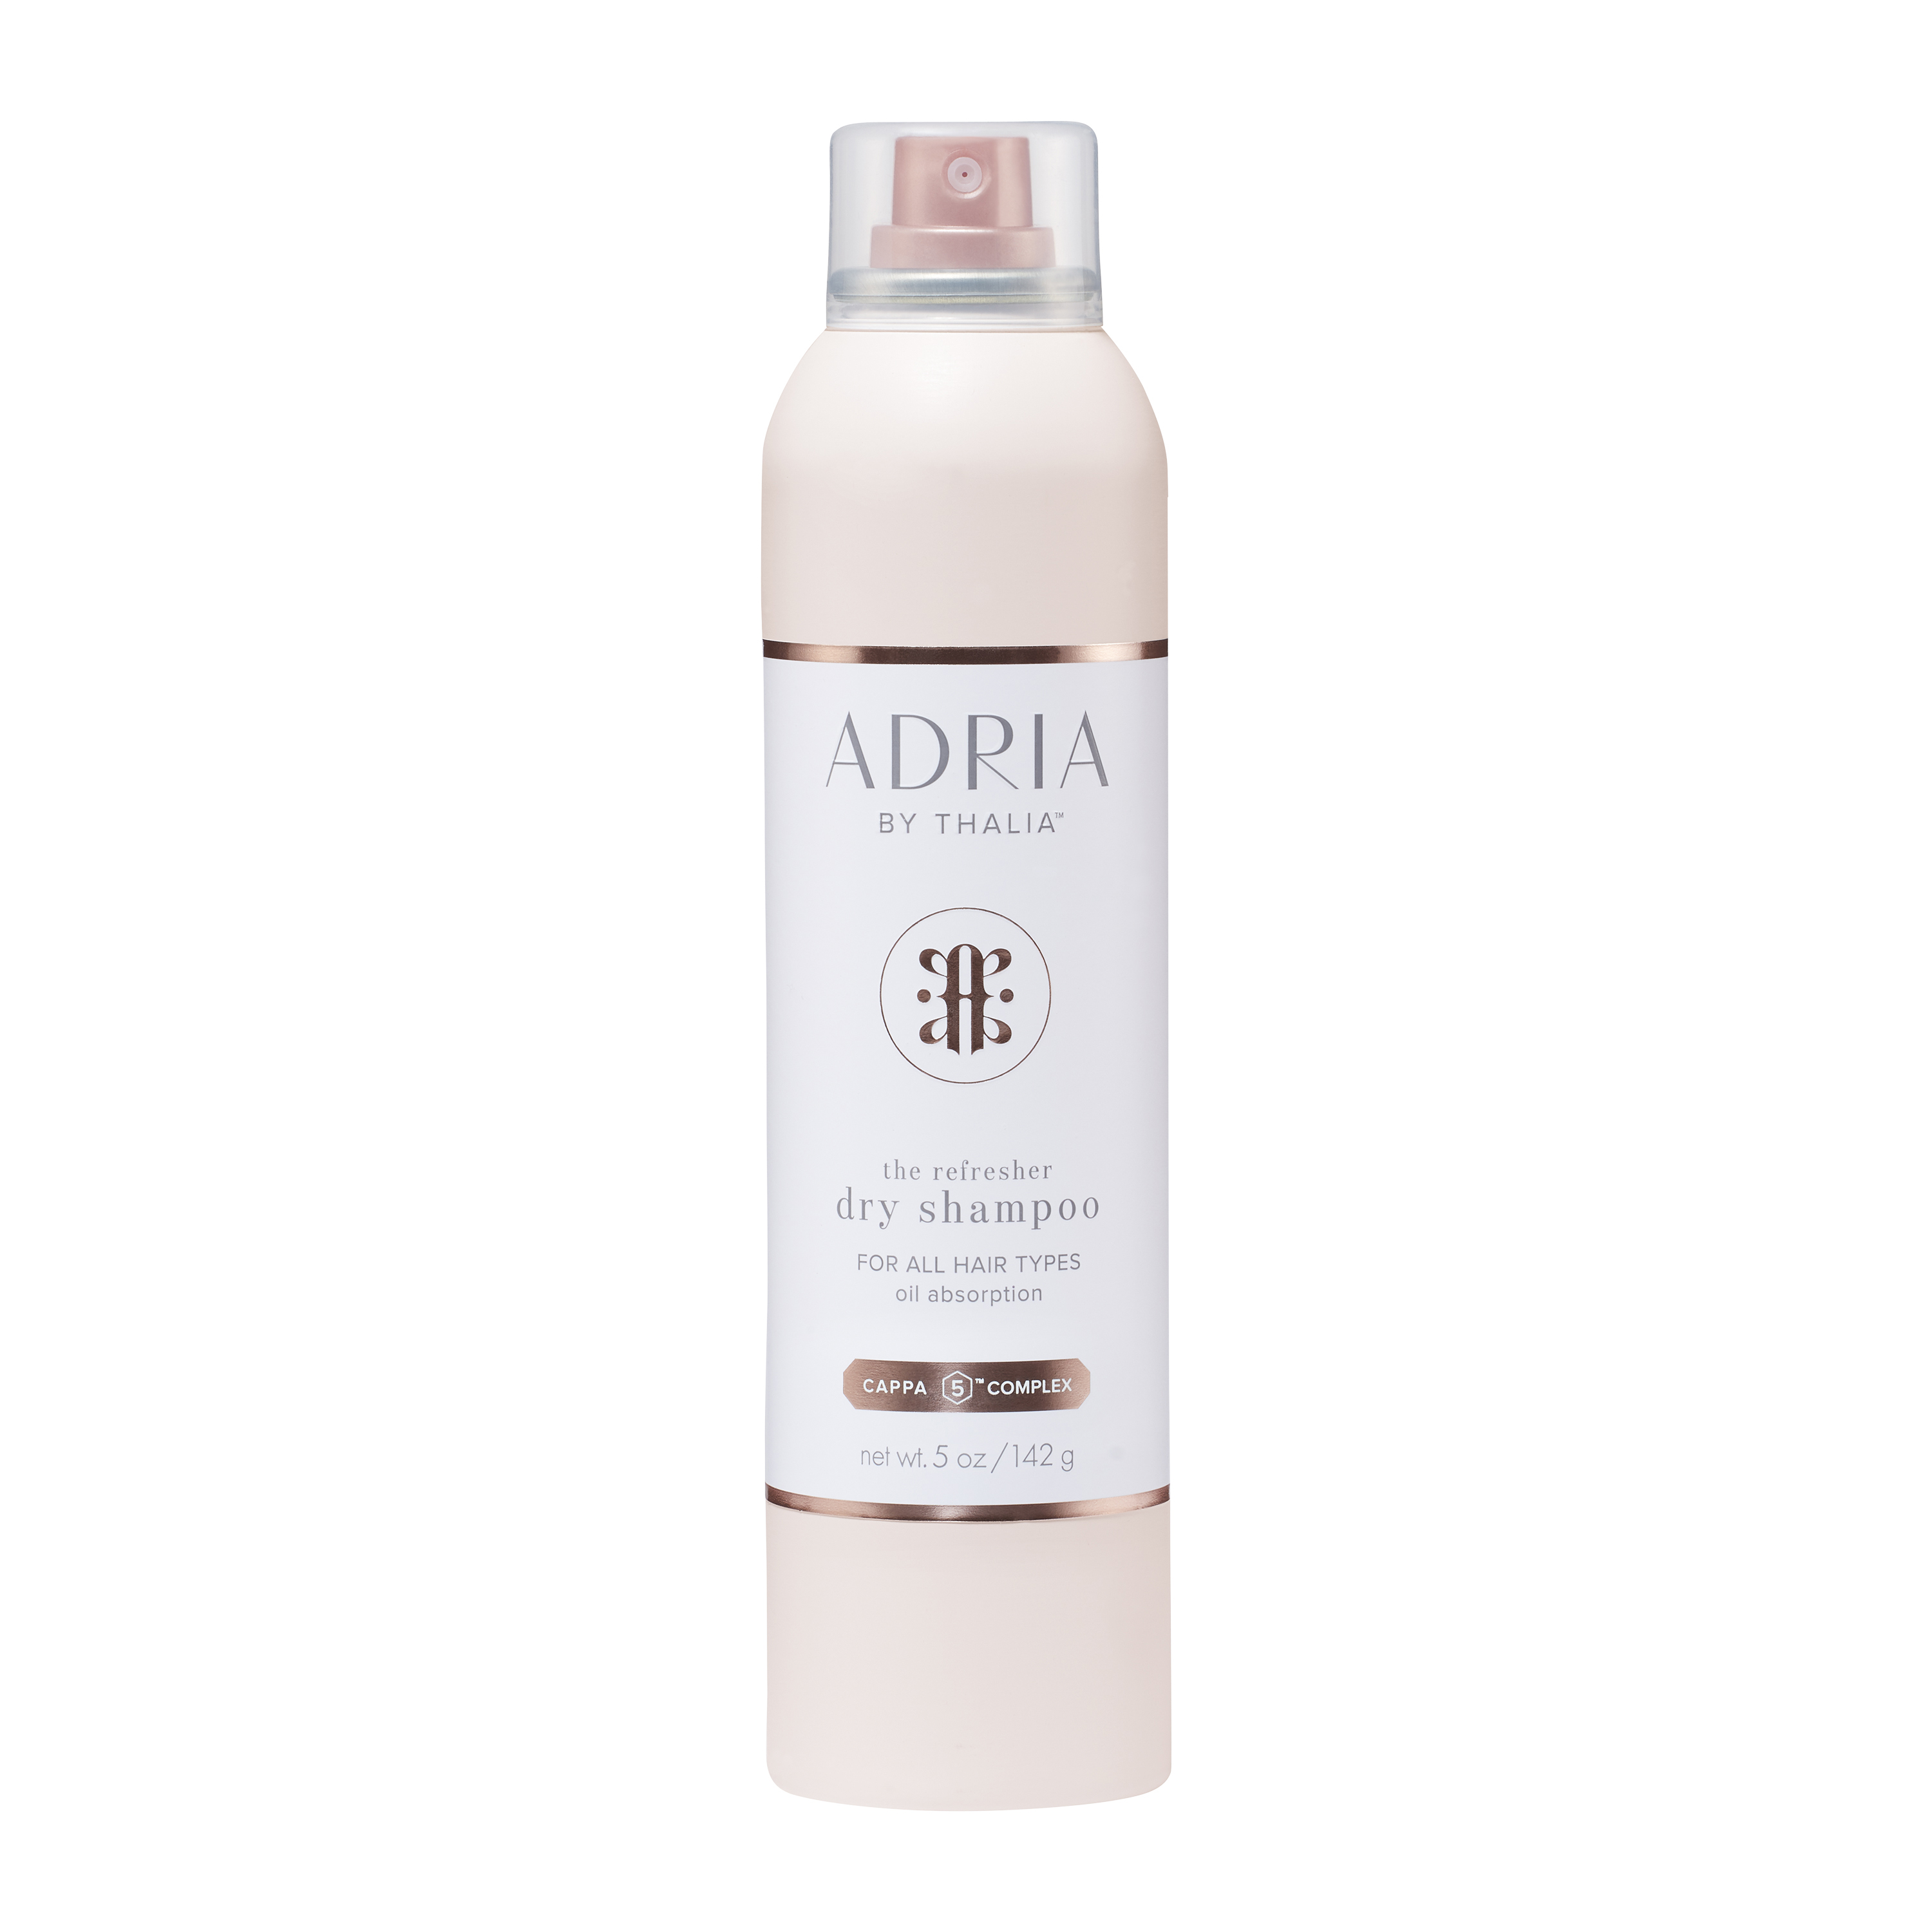 Adria by Thalia Dry Shampoo 5 OZ - image 1 of 3